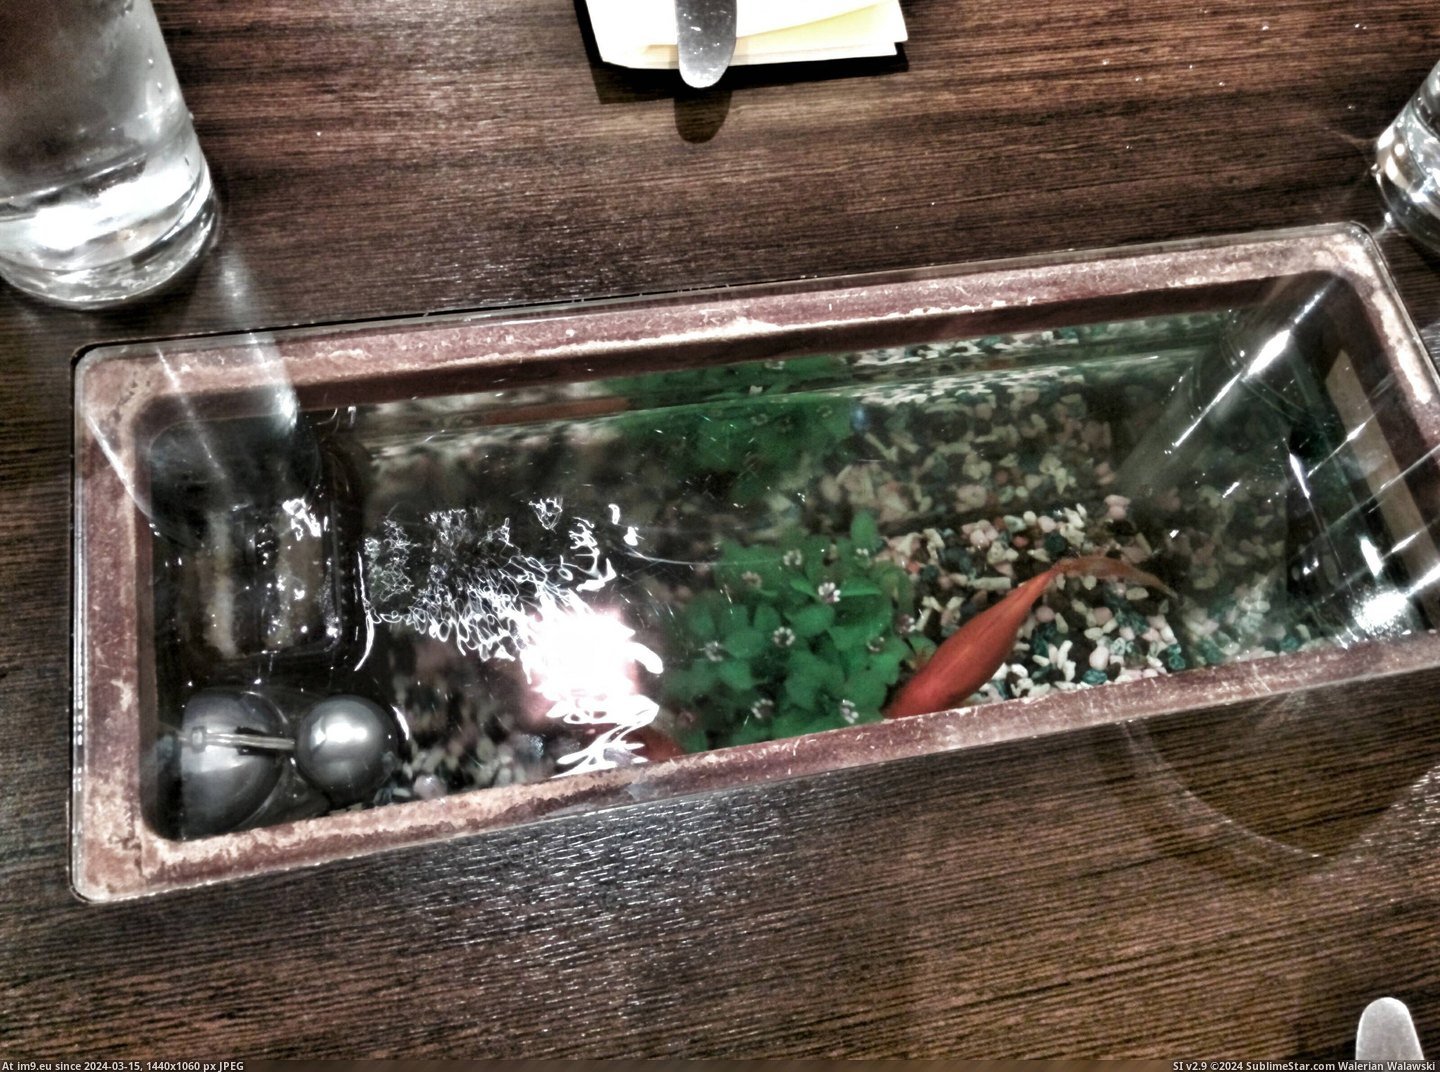 #Bowl #Restaurant #Tables #Fish [Mildlyinteresting] The tables in this restaurant have a fish bowl in the middle of them. Pic. (Obraz z album My r/MILDLYINTERESTING favs))